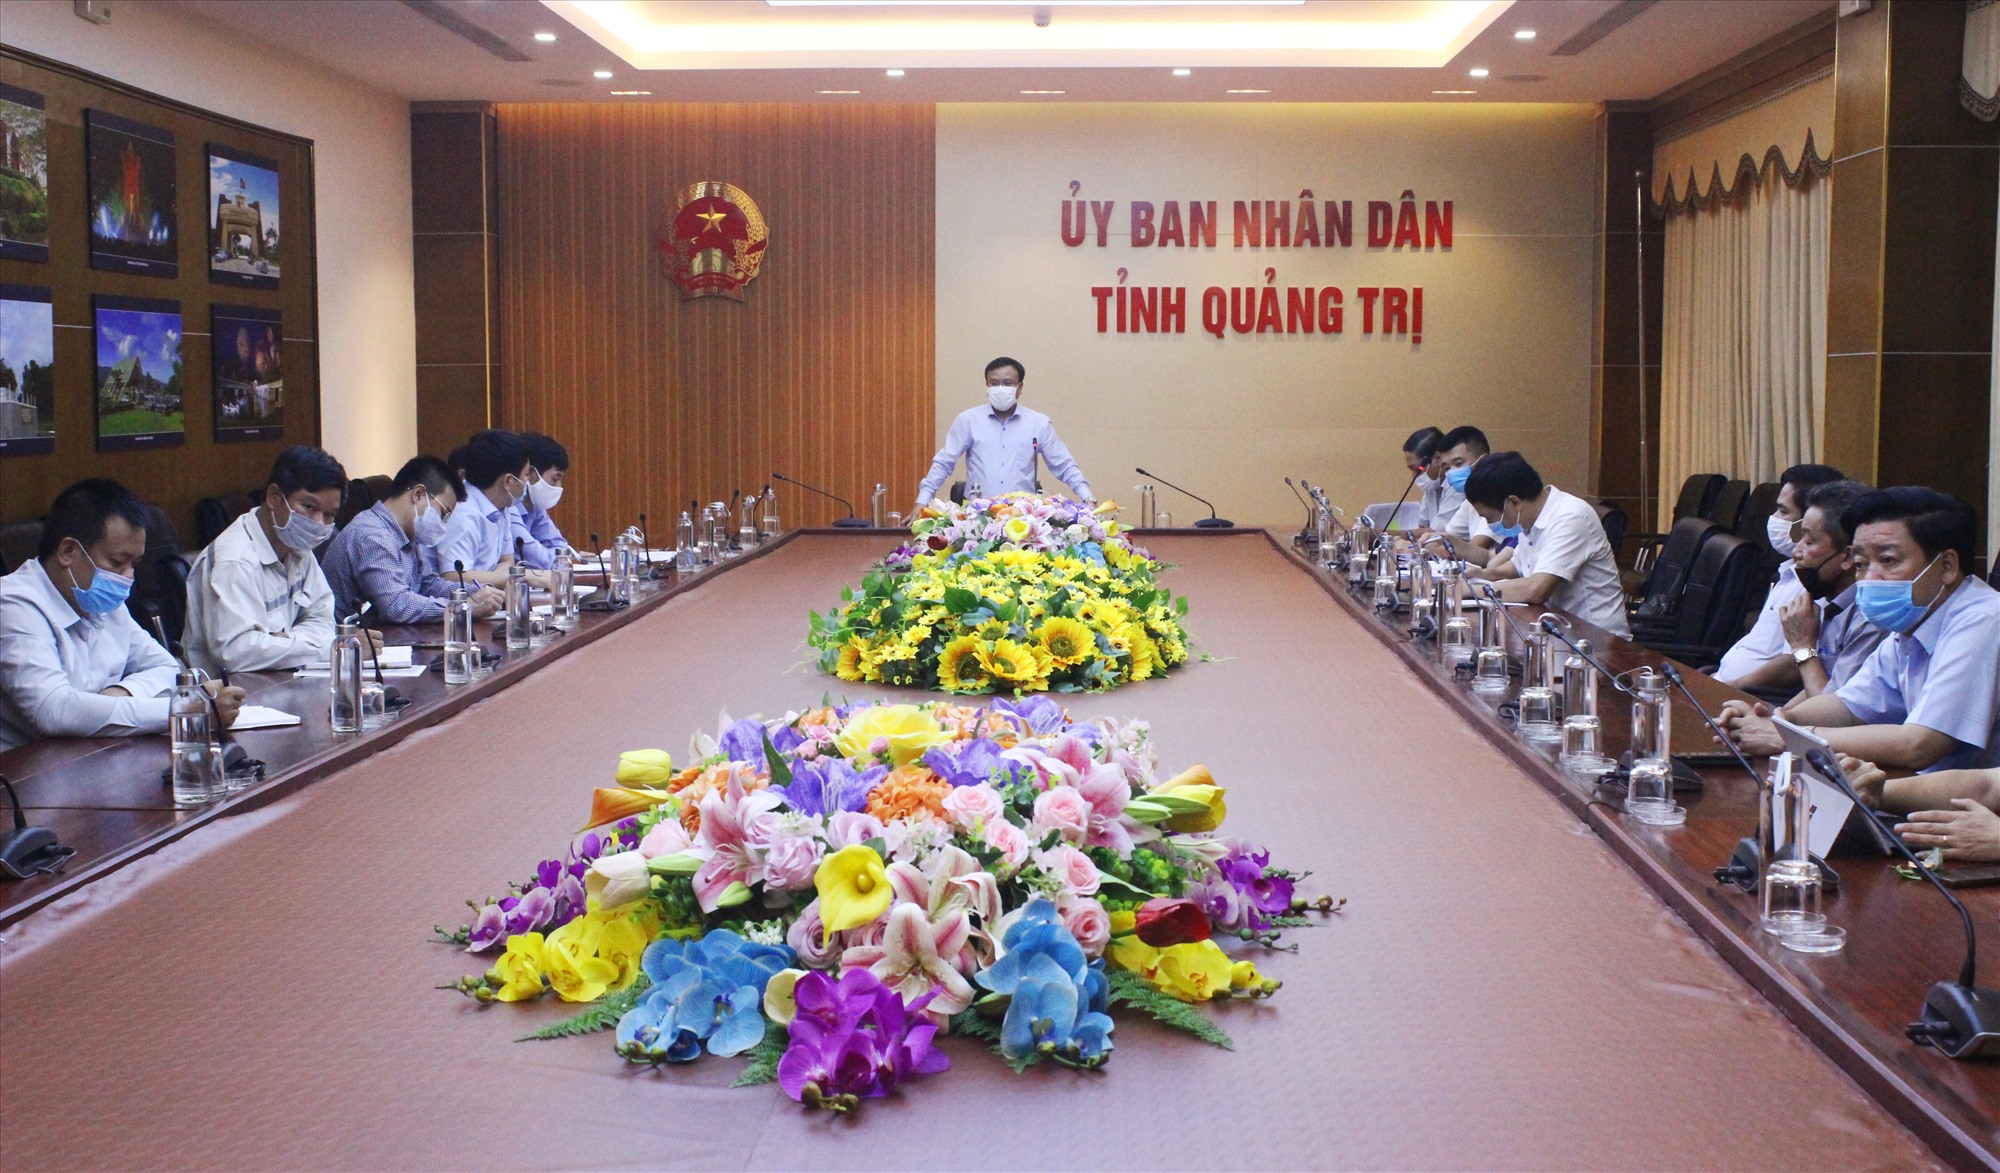 Phó Chủ tịch UBND tỉnh Lê Đức Tiến bày tỏ quyết tâm thực hiện Dự án đầu tư nâng cấp, mở rộng Quốc lộ 9 đoạn từ cảng Cửa Việt đến Quốc lộ 1. Ảnh: N.B